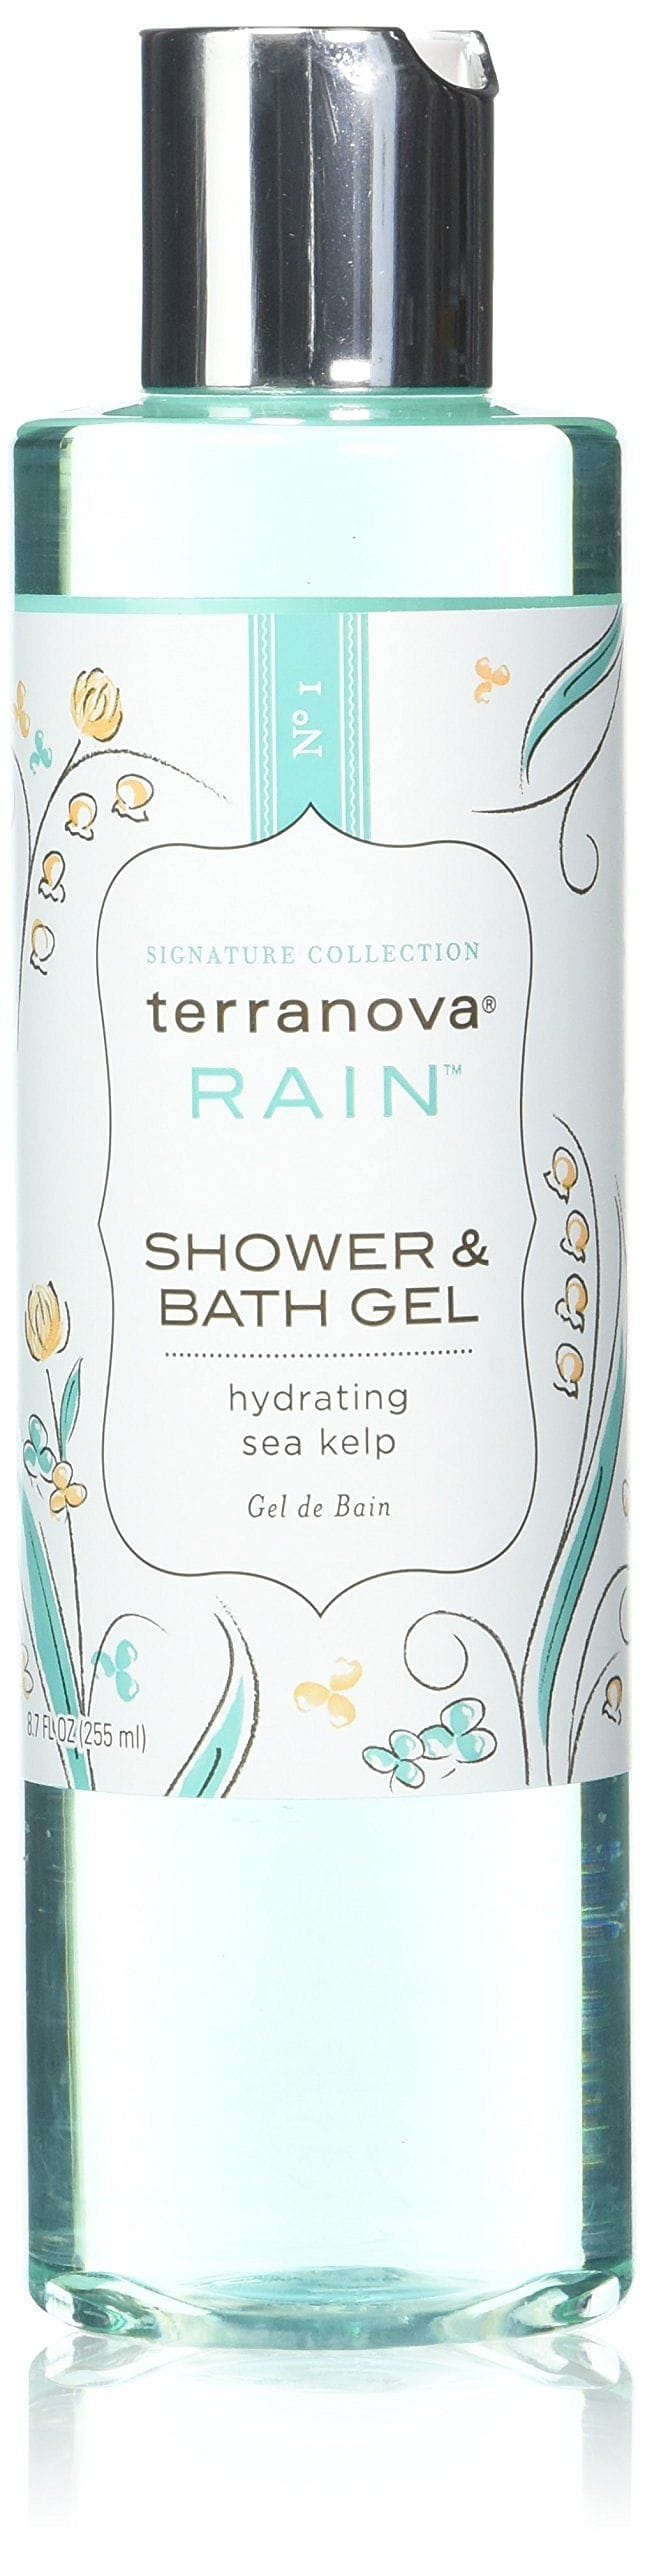 Terranova Rain Shower Gel - Shelburne Country Store